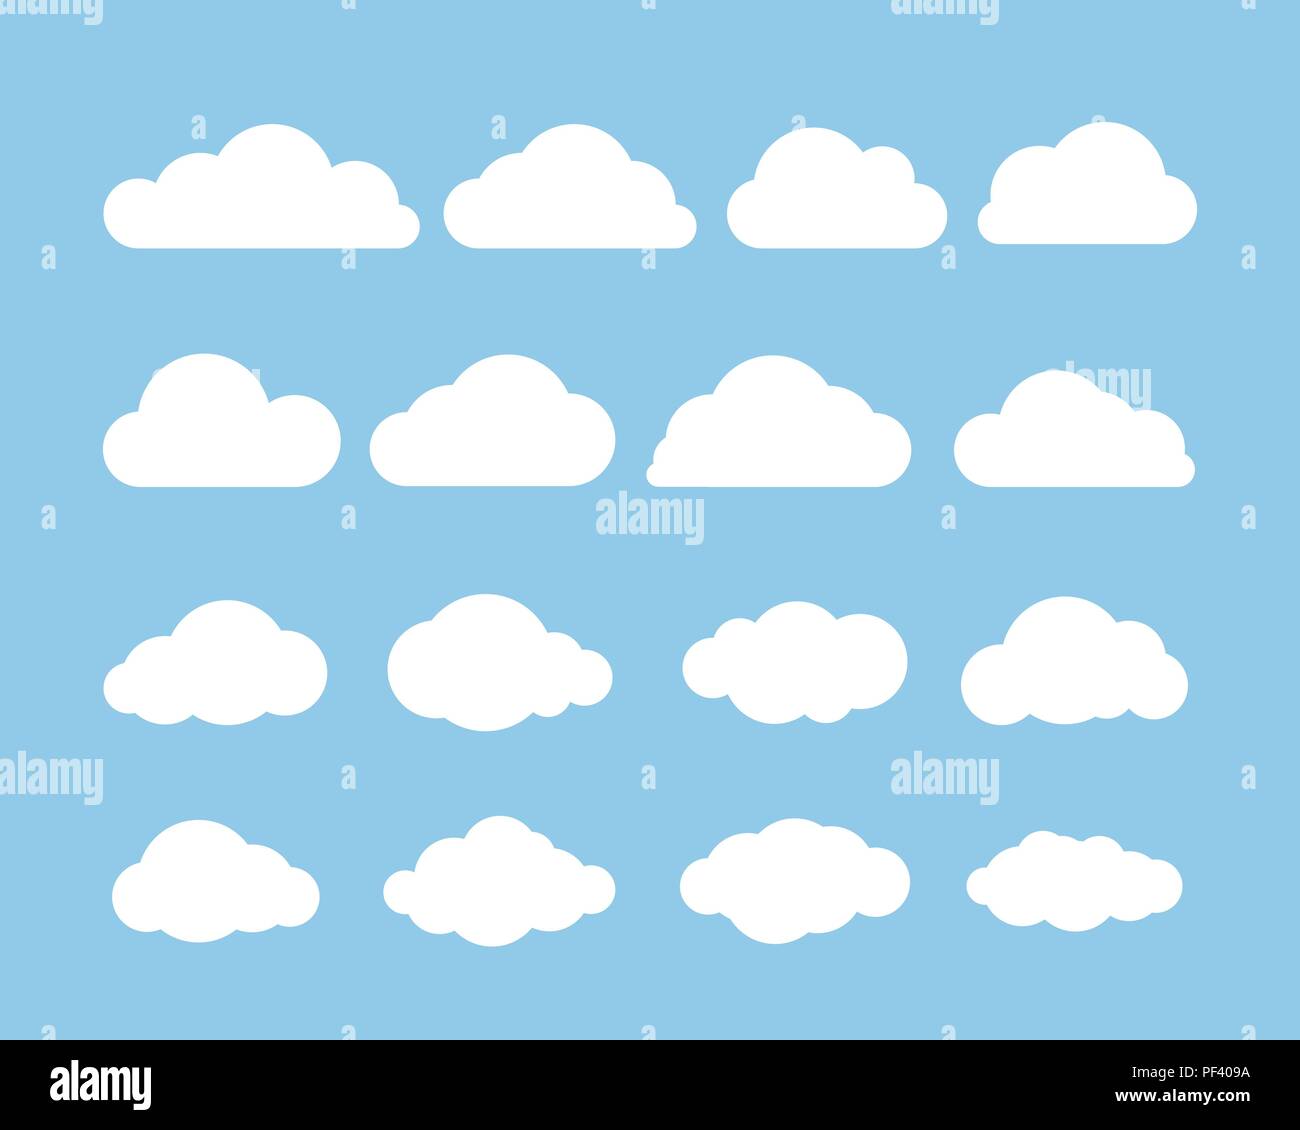 Cartoon flachbild Satz von weißen Wolken am blauen Hintergrund isoliert. Weiße Wolke. Vector Illustration Stock Vektor